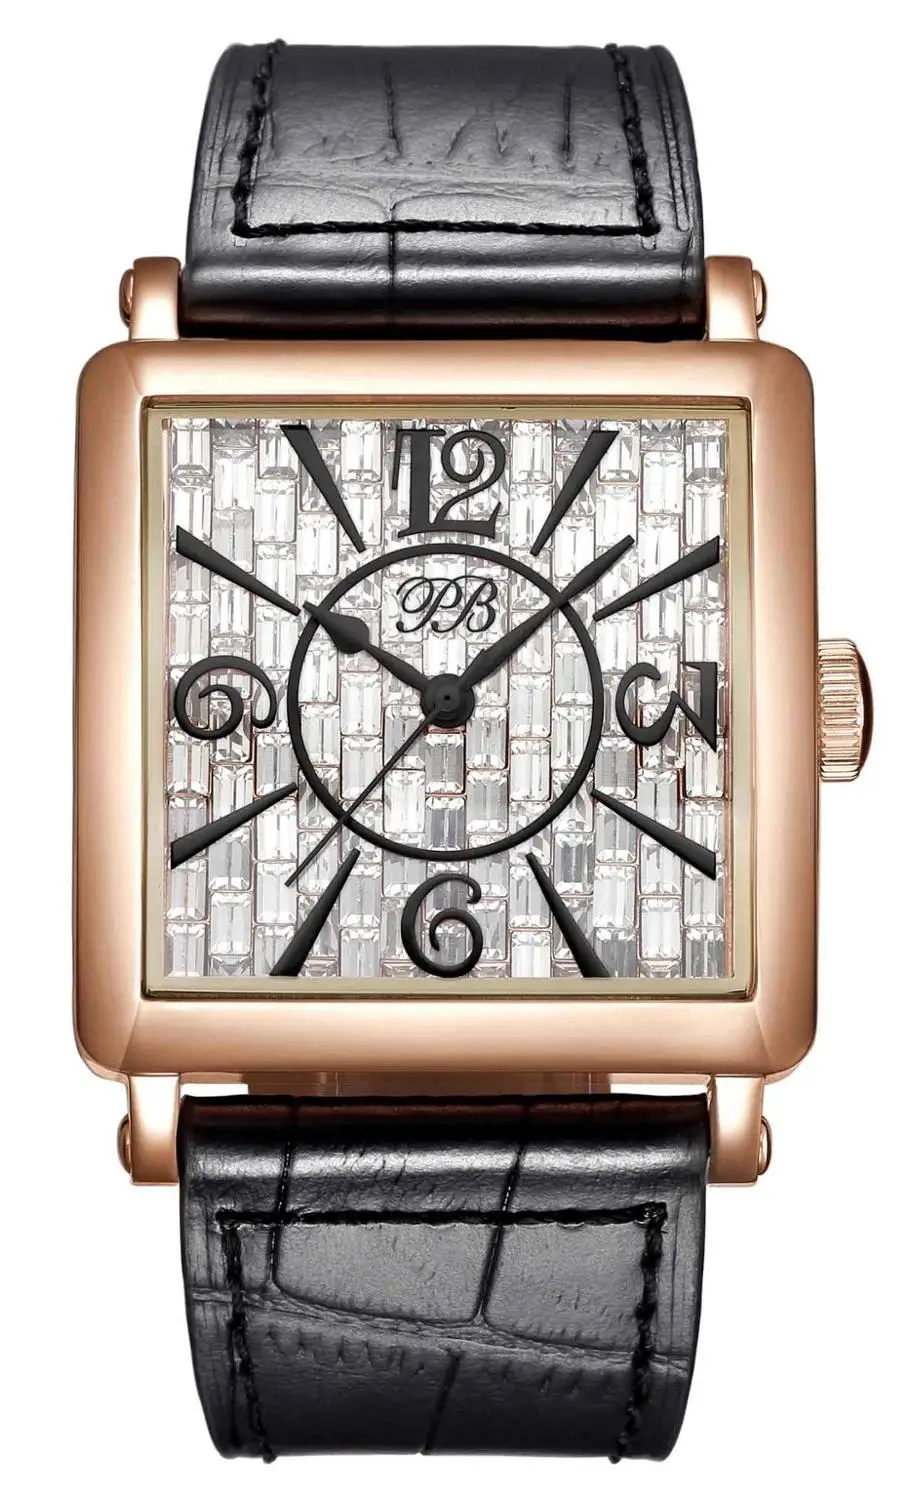 Princess Butterfly марка квадратный классический циферблат часы женские водонепроницаемый кожаный ремешок Кварцевые красные часы наручные - Цвет: HL650PC